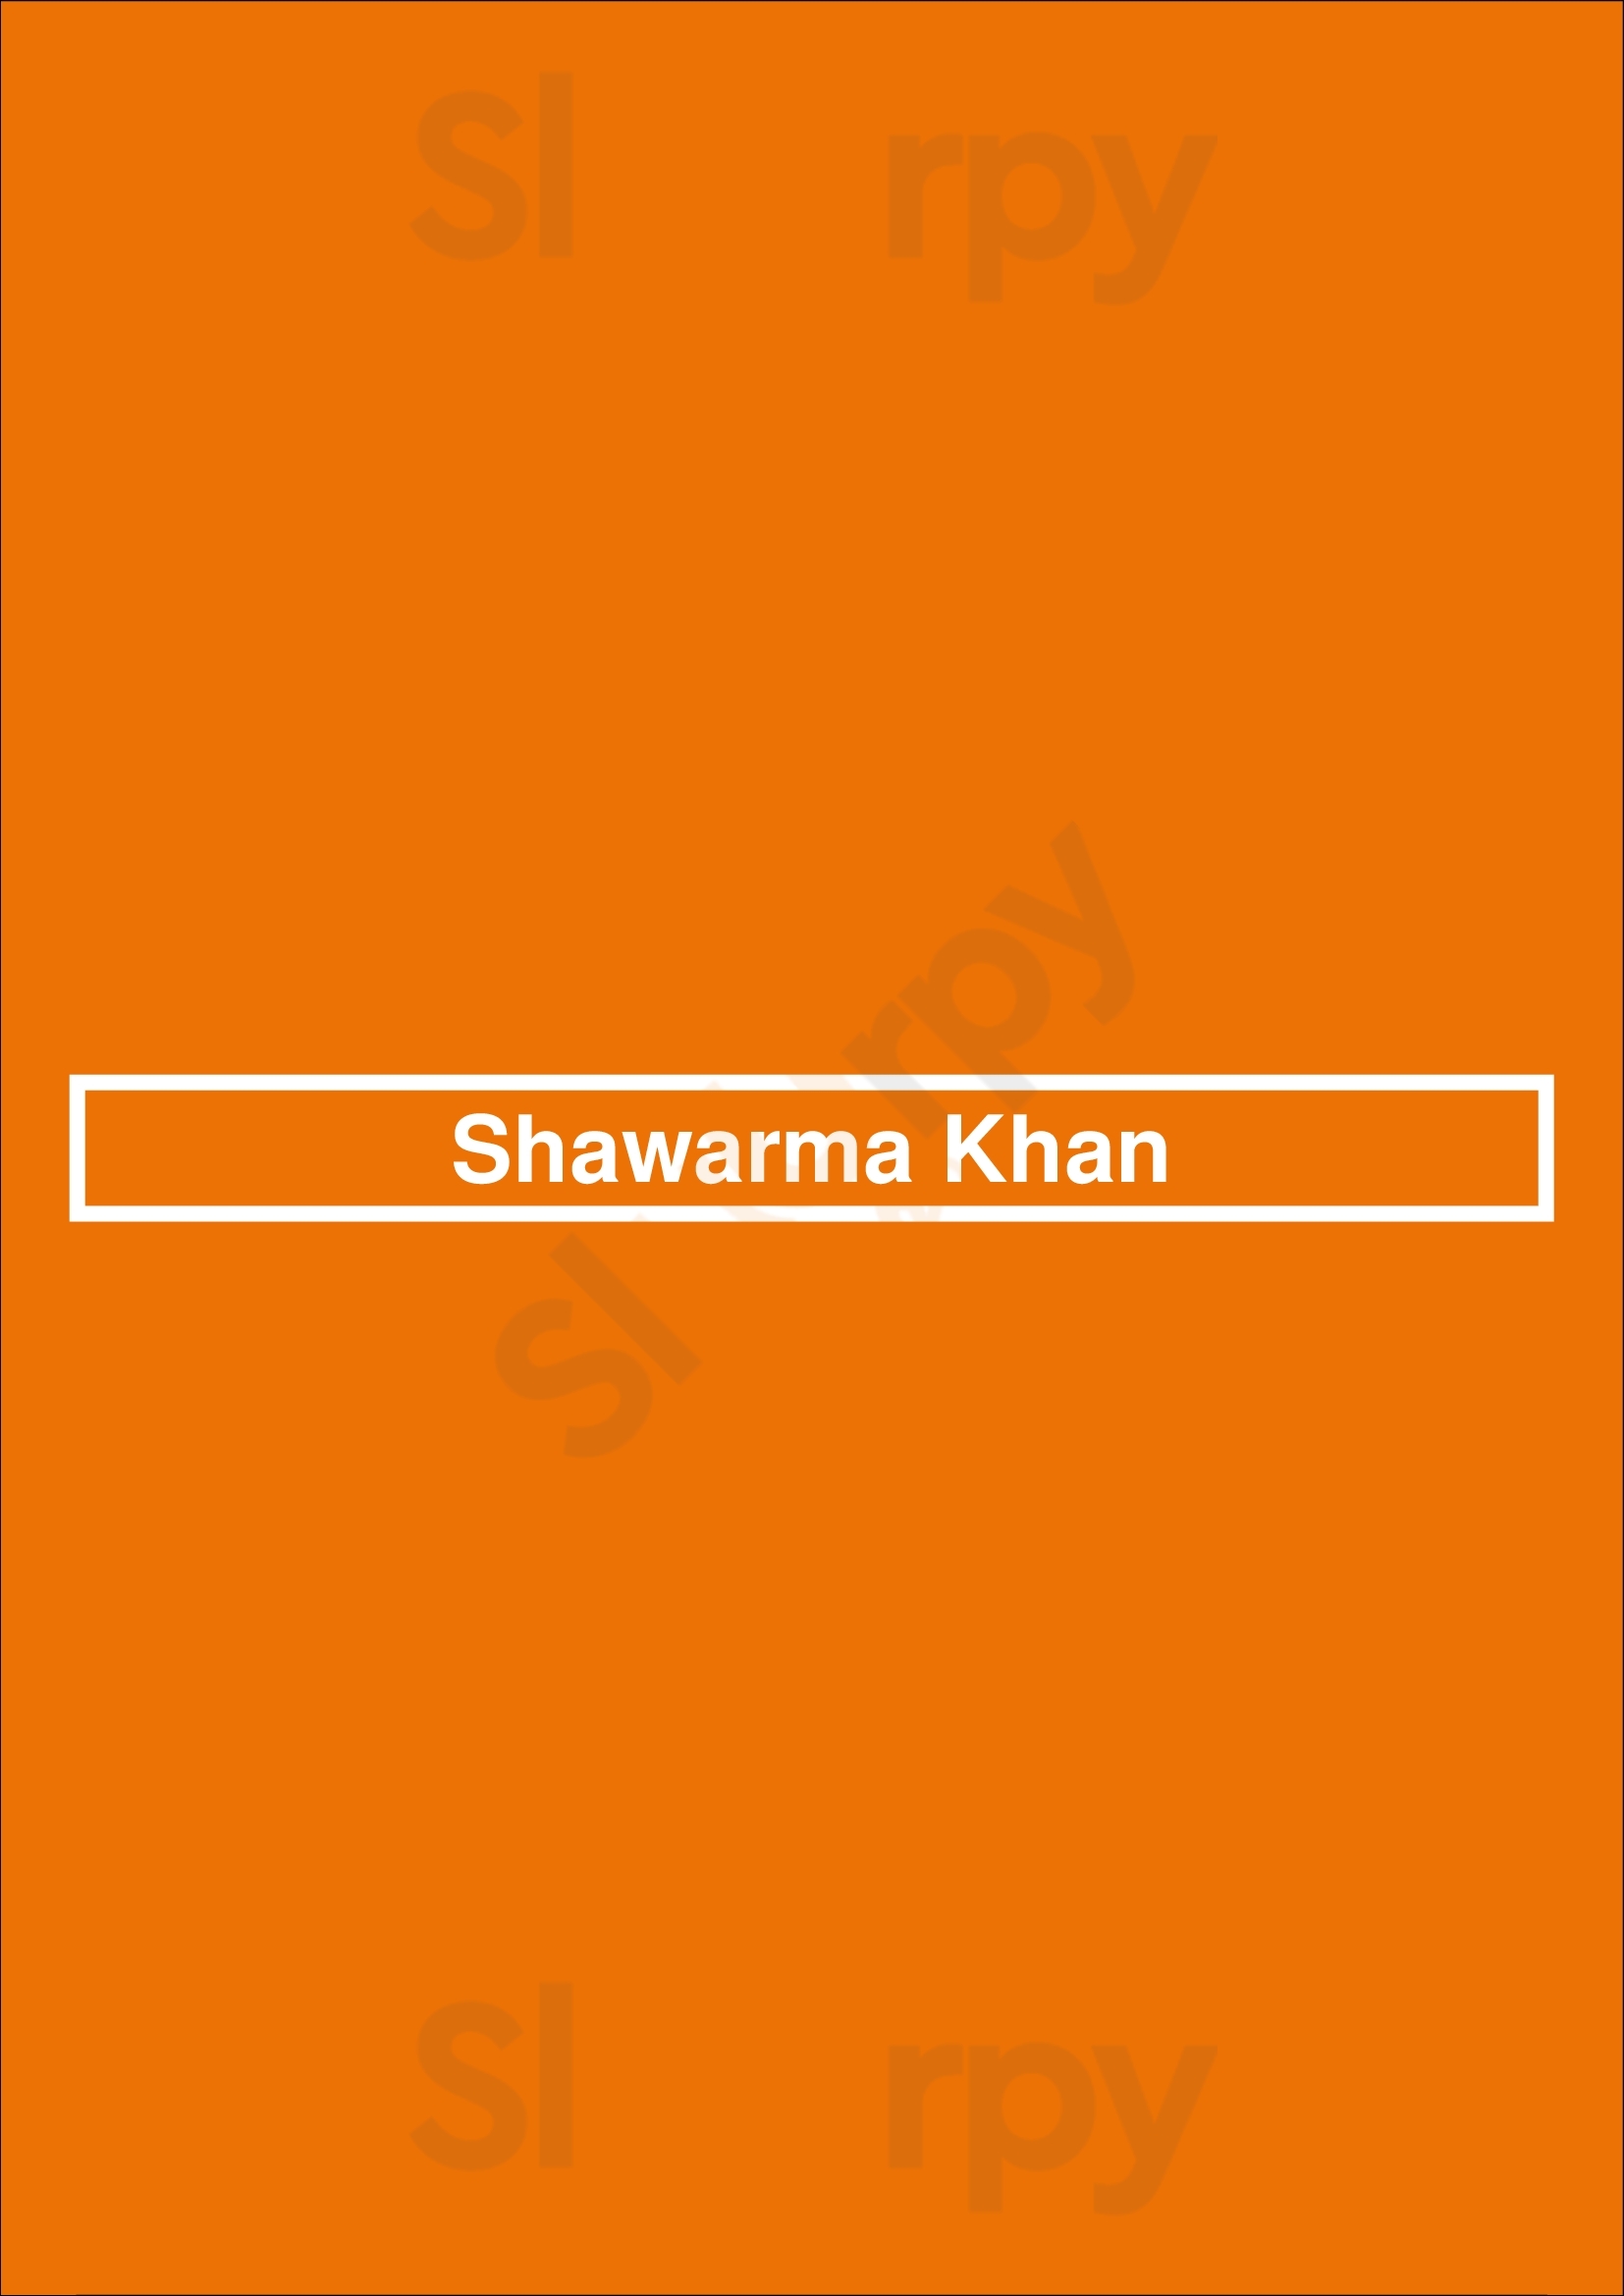 Shawarma Khan Winnipeg Menu - 1